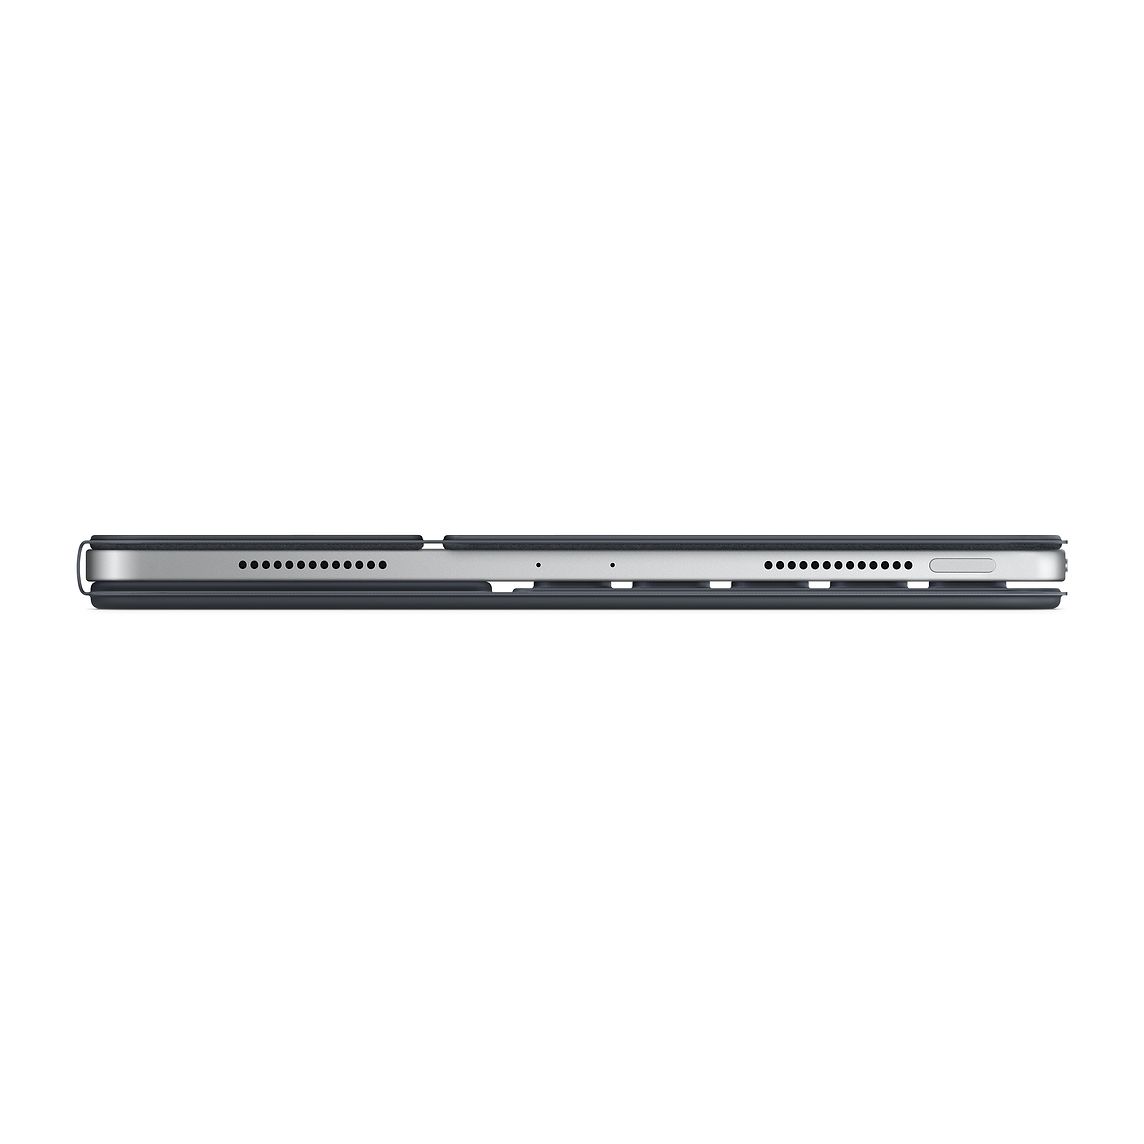 Apple Smart Keyboard Folio for iPad Pro 11 inch (Gen 1)